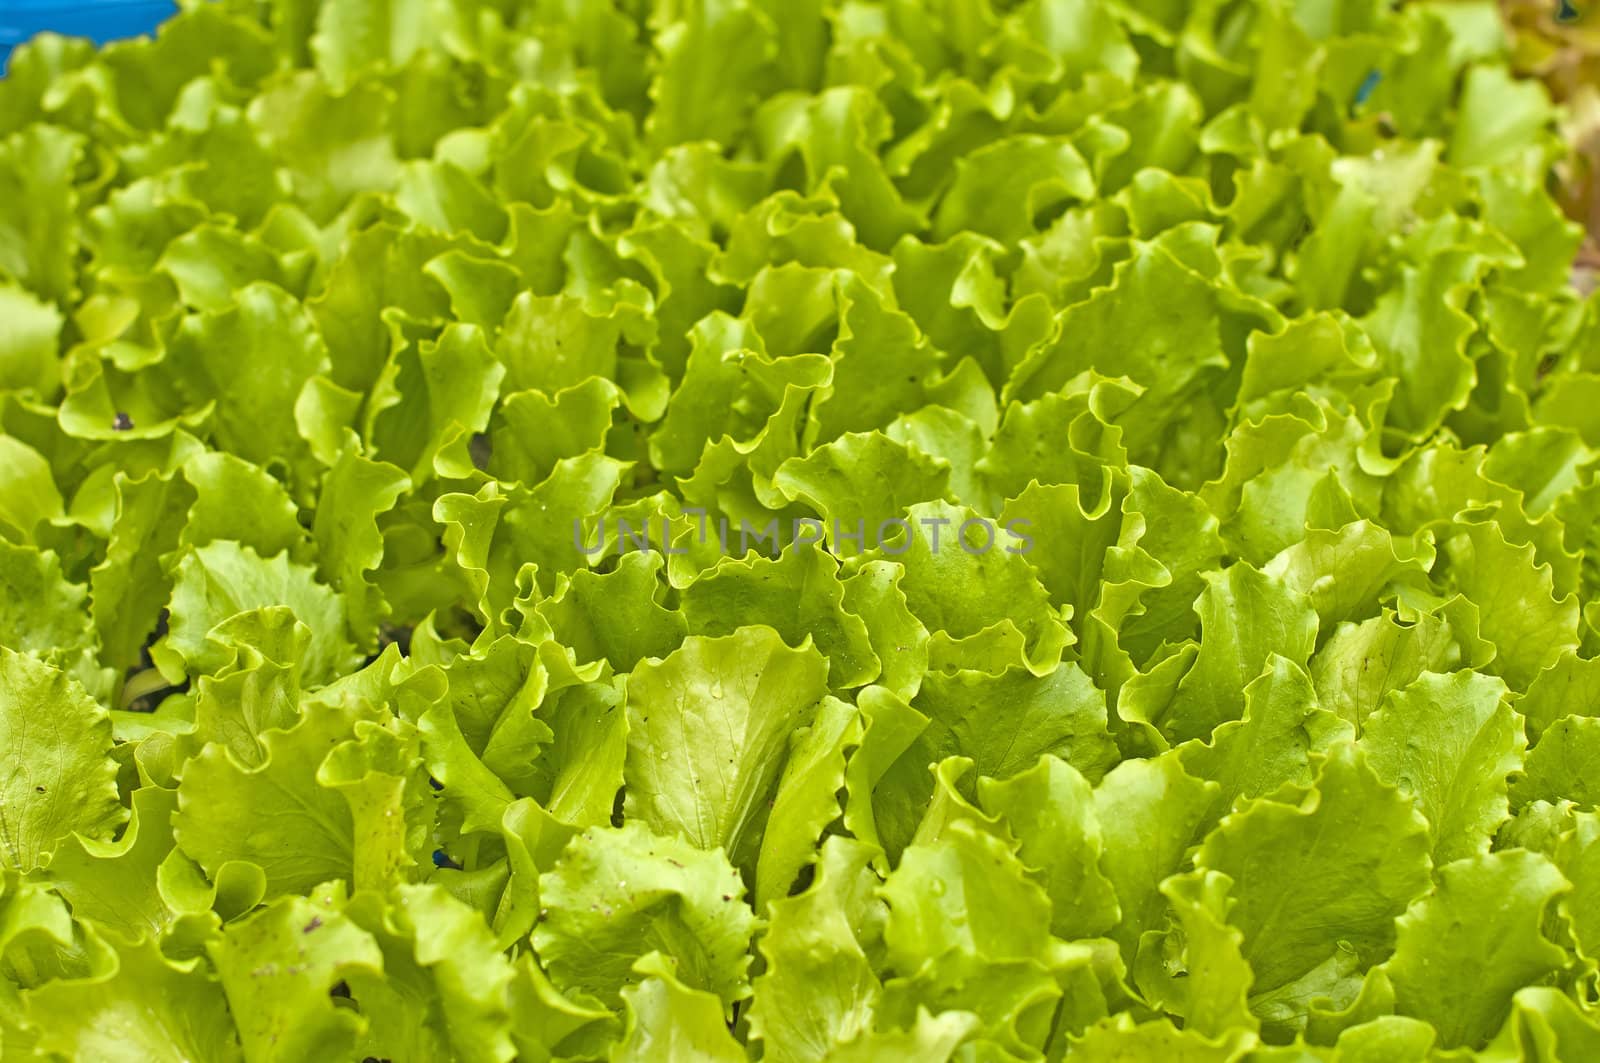 seedlings of salad by Jochen